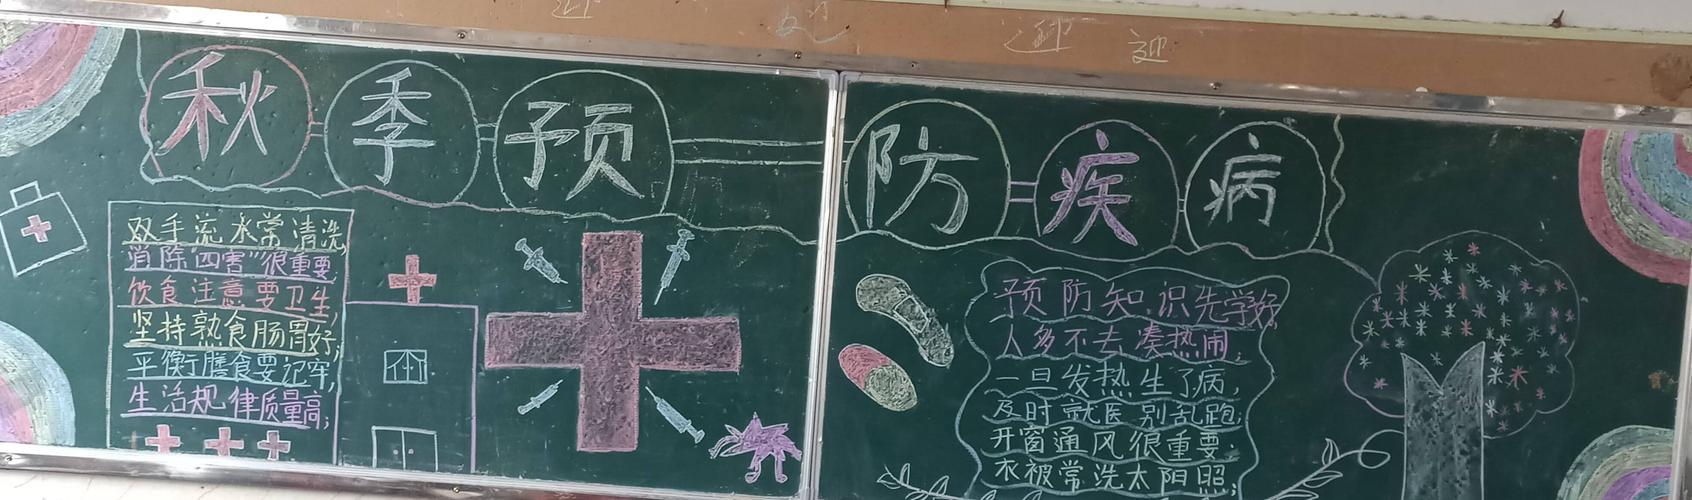 危害我校组织了以预防传染病为主题的黑板报各班级师生共同努力